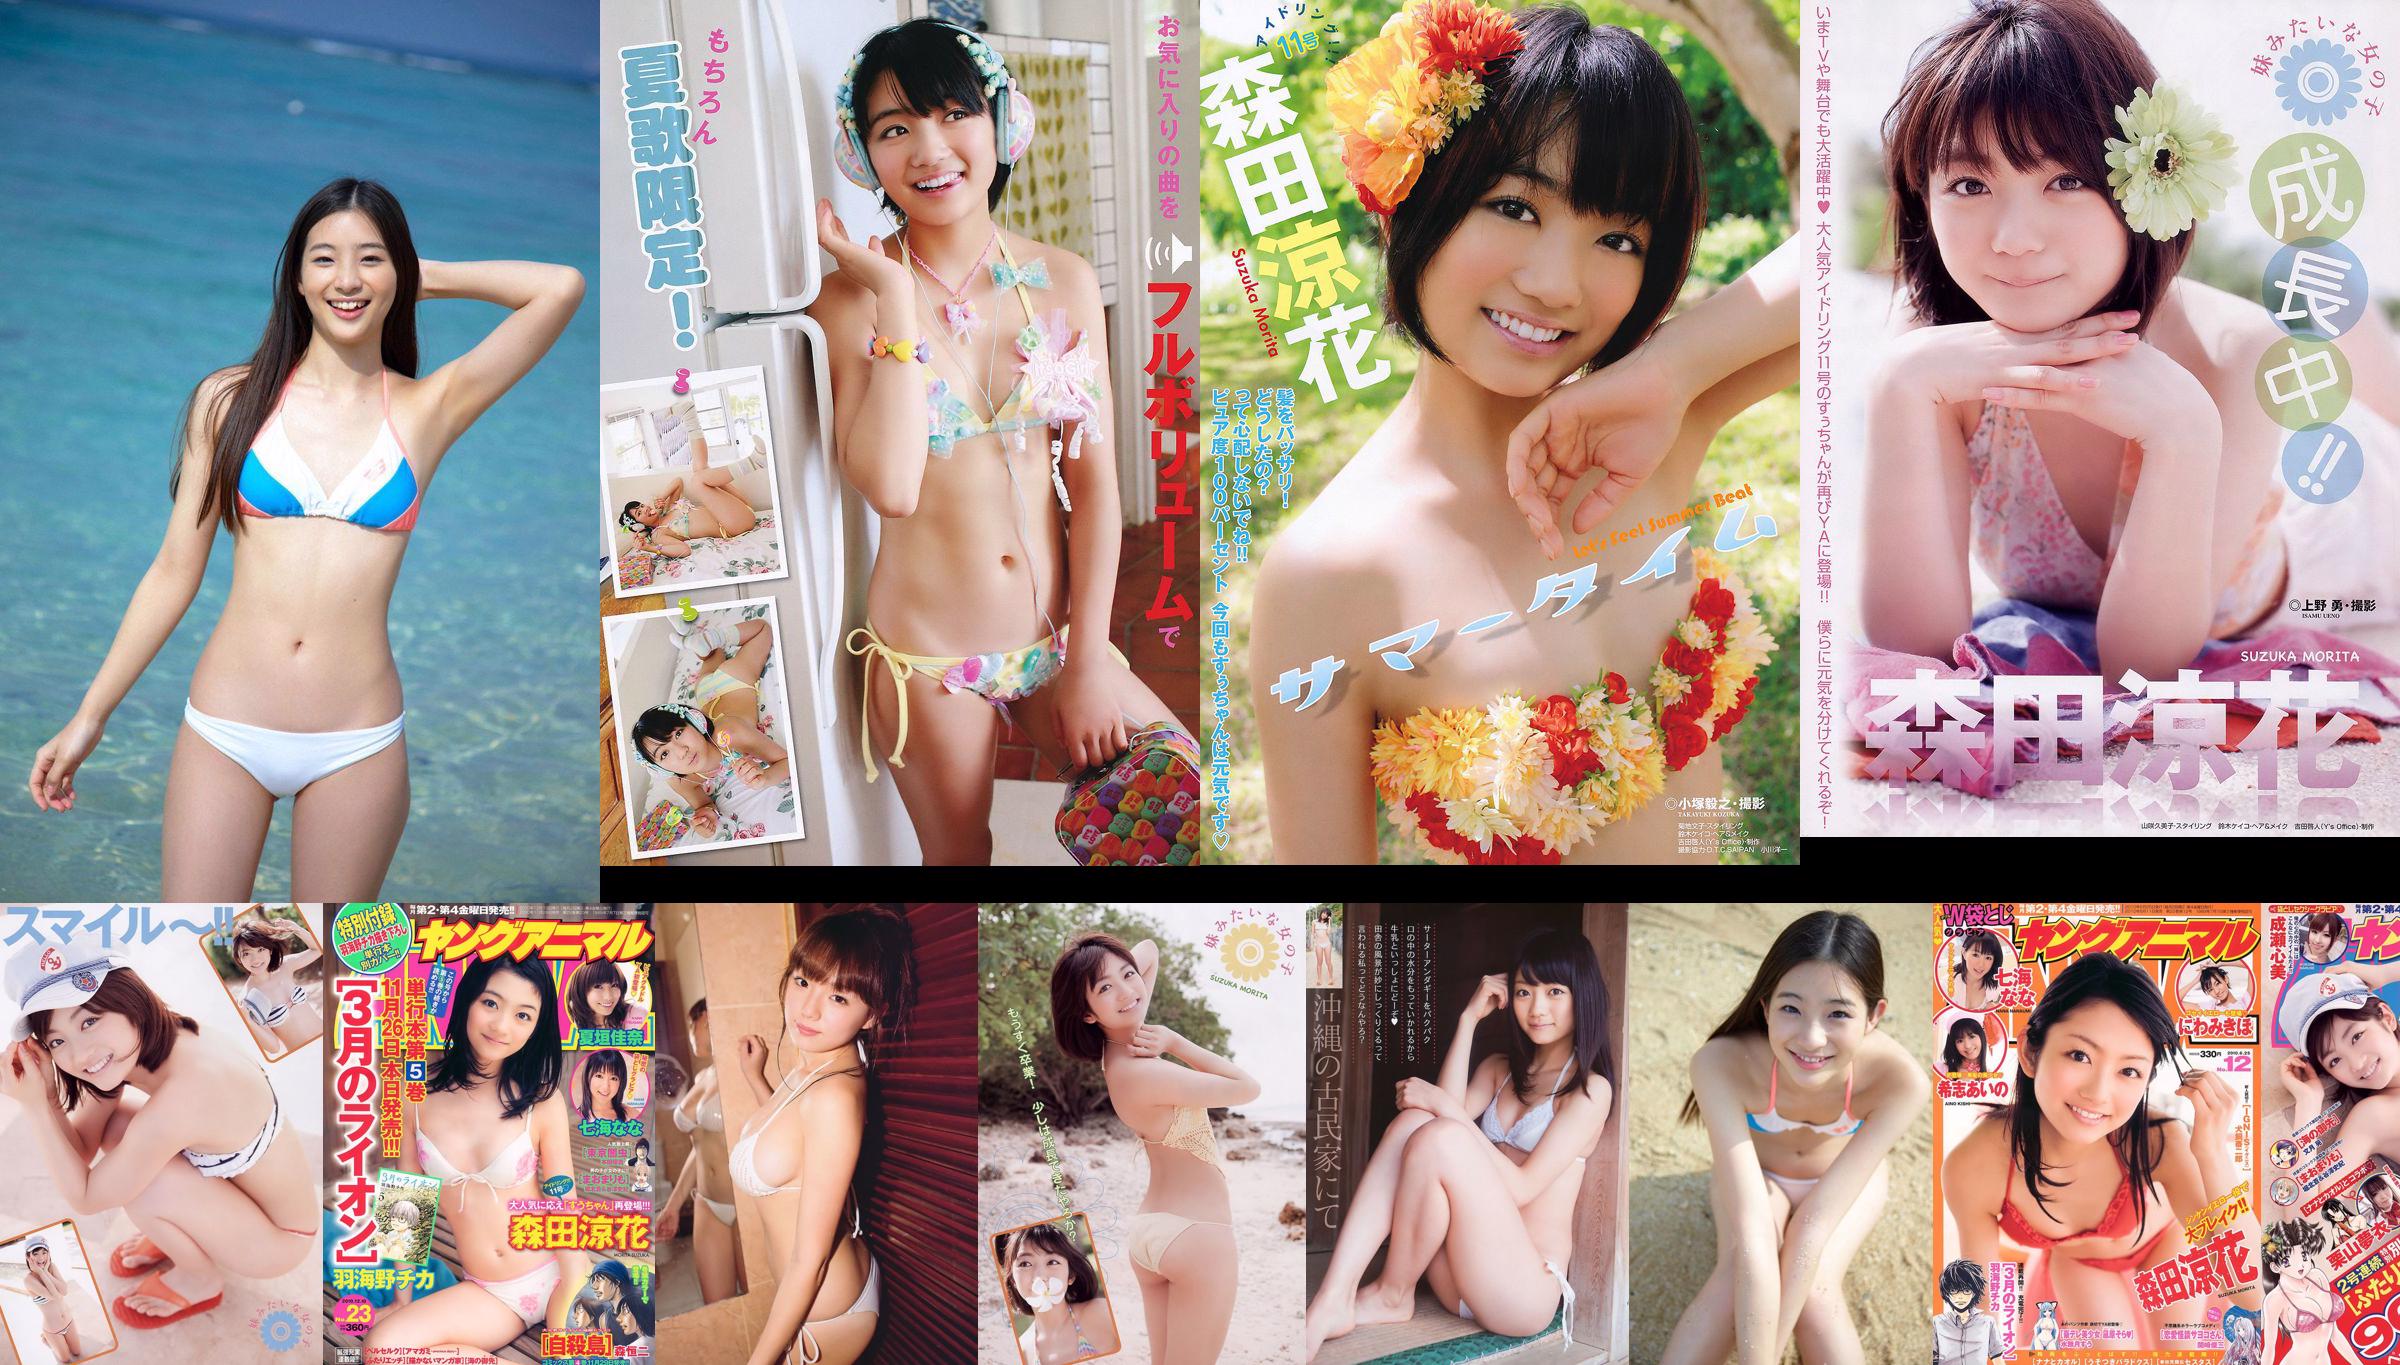 Morita Ryoka Uchida Rio Eiro Chika [Young Animal] 2011 No.24 Photo Magazine No.10f68c หน้า 1